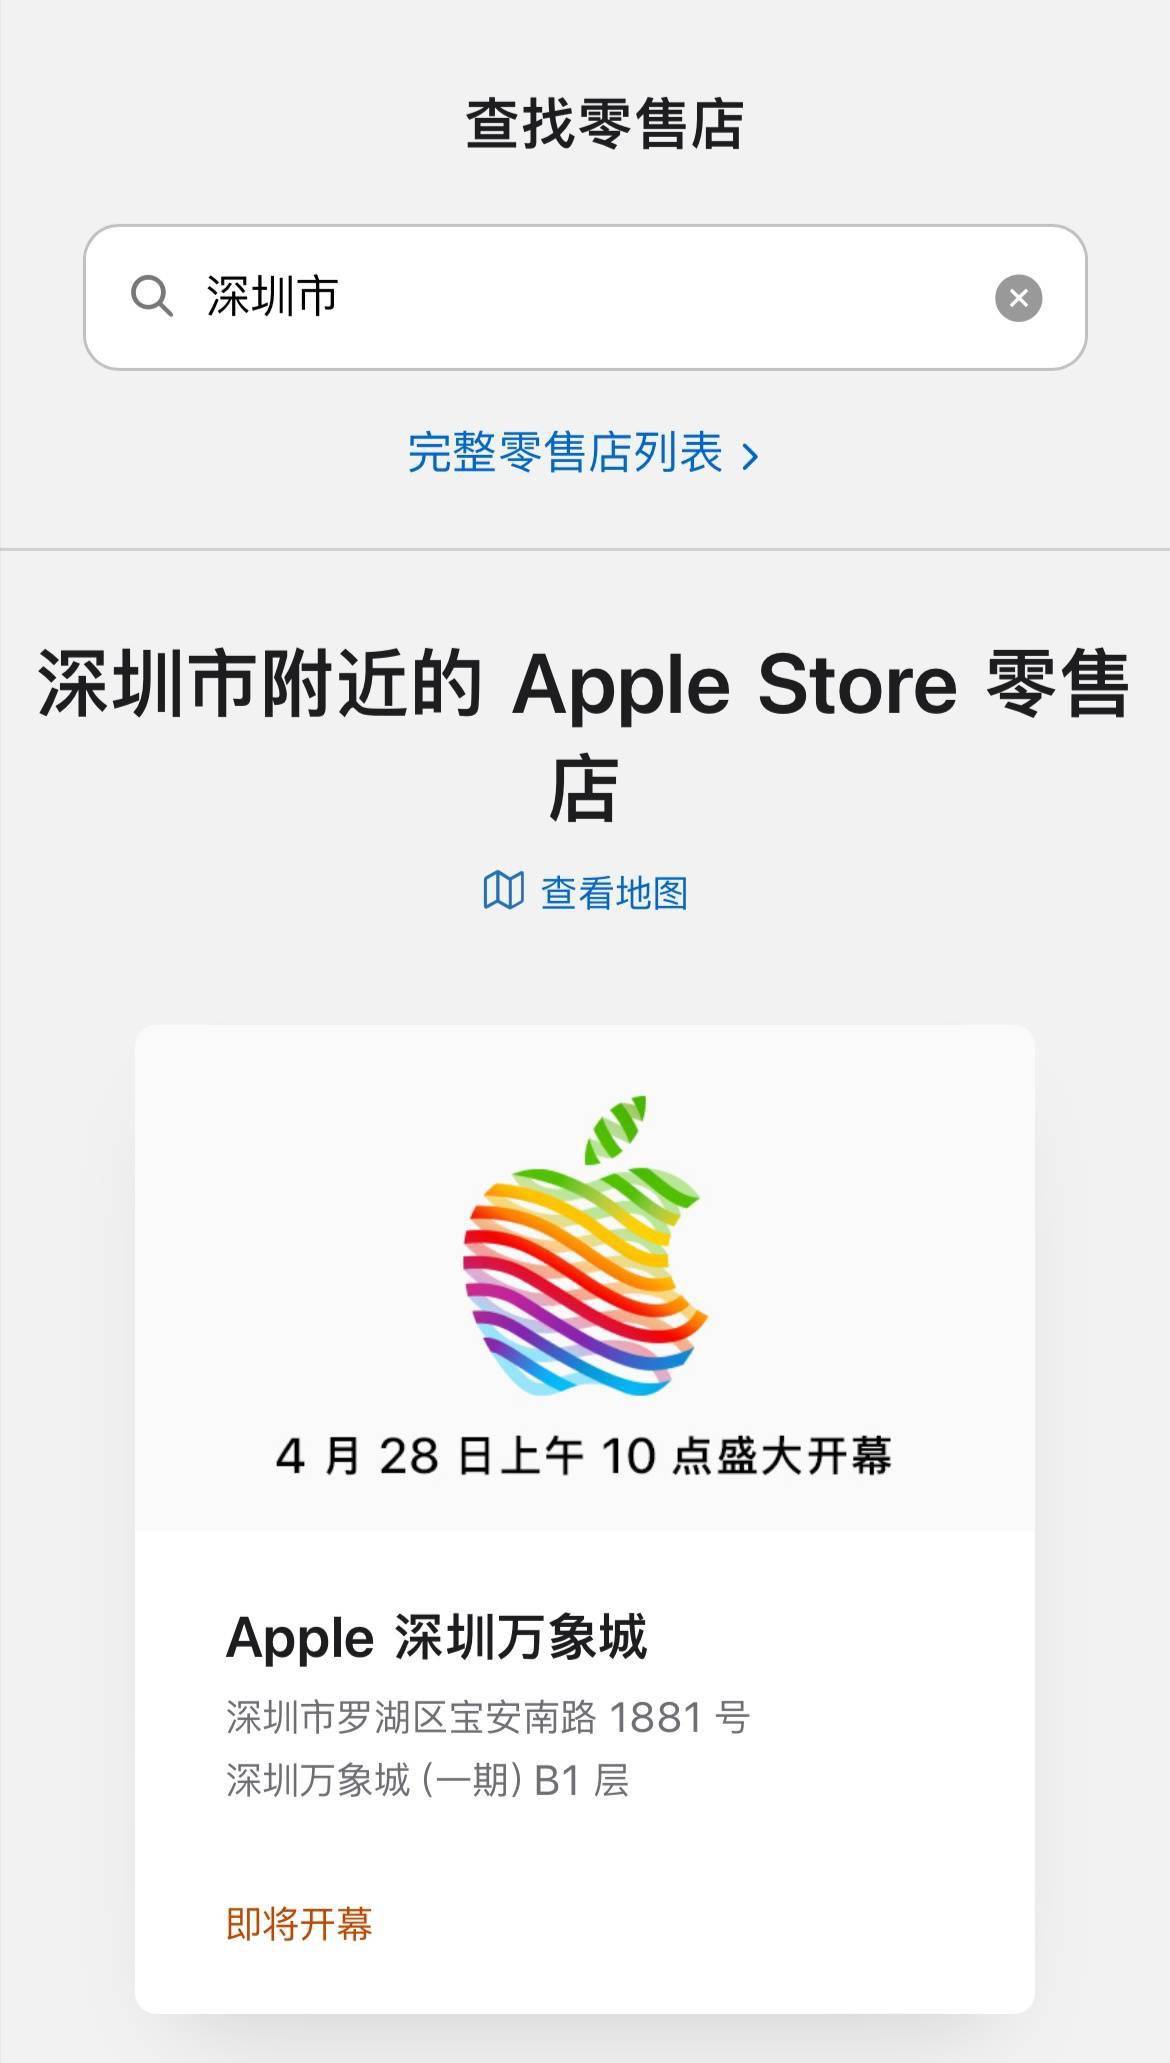 深圳第二家苹果Apple Store定于4月28日上午10点开幕 位于罗湖万象城